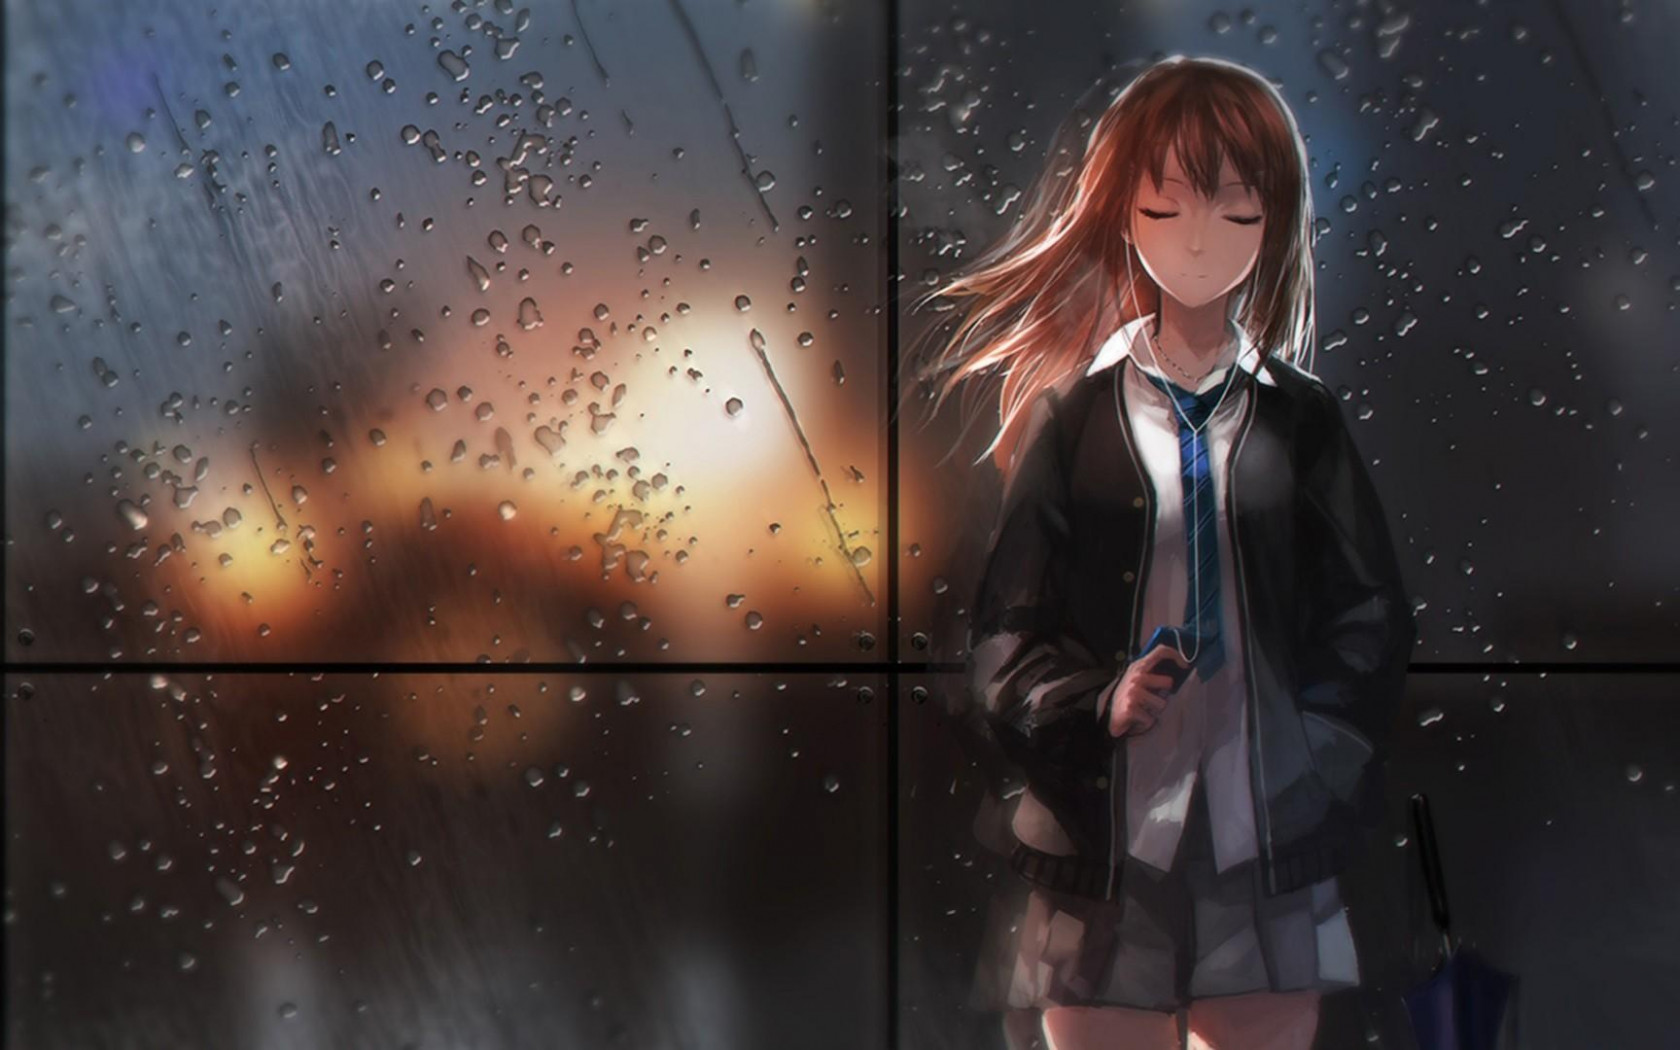 Hình ảnh anime mưa buồn, cô đơn đẹp